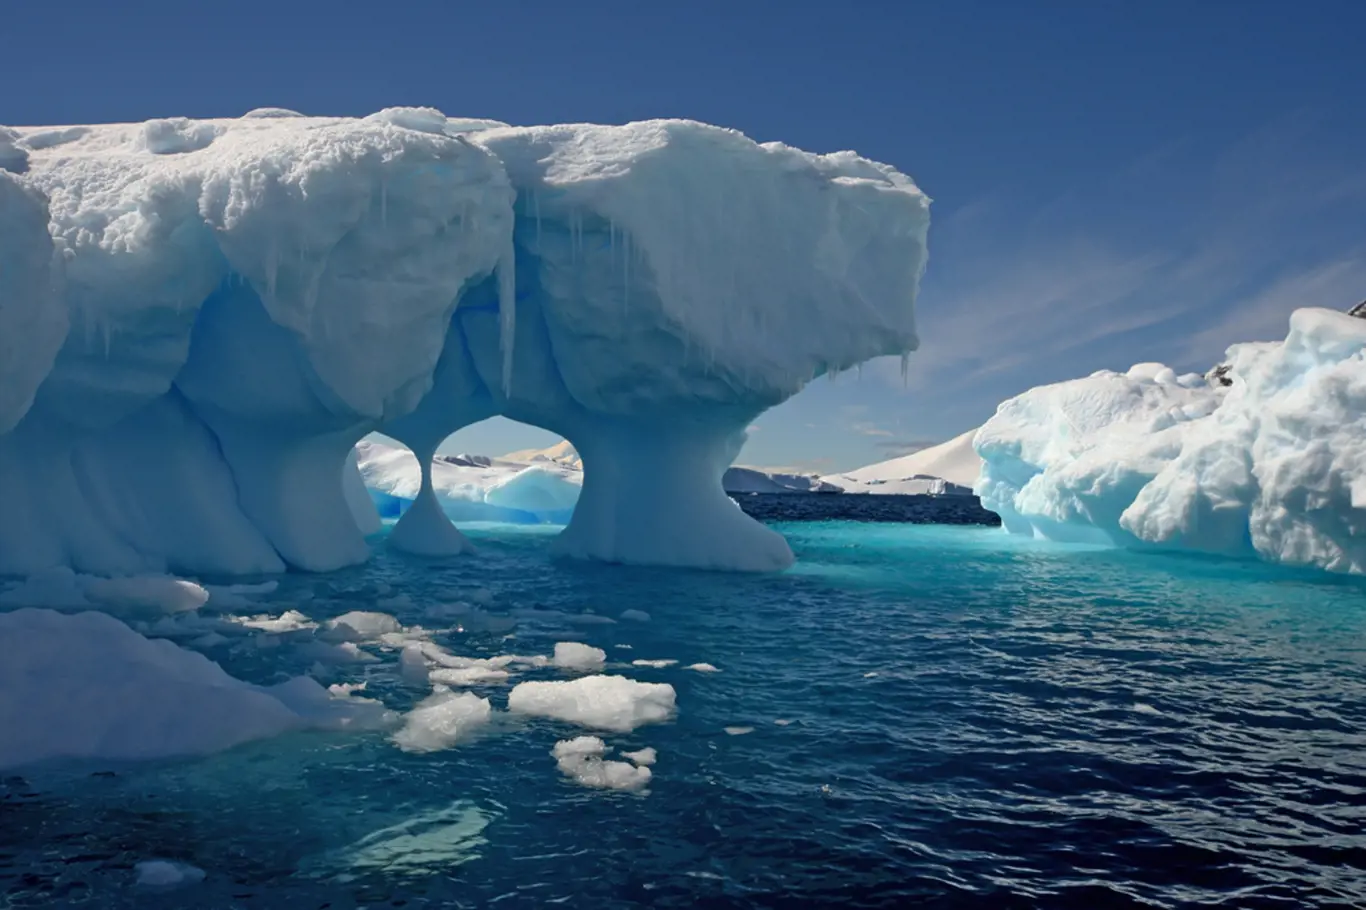 Tající ledovce poskytují vědcům nové poznatky o Zemi